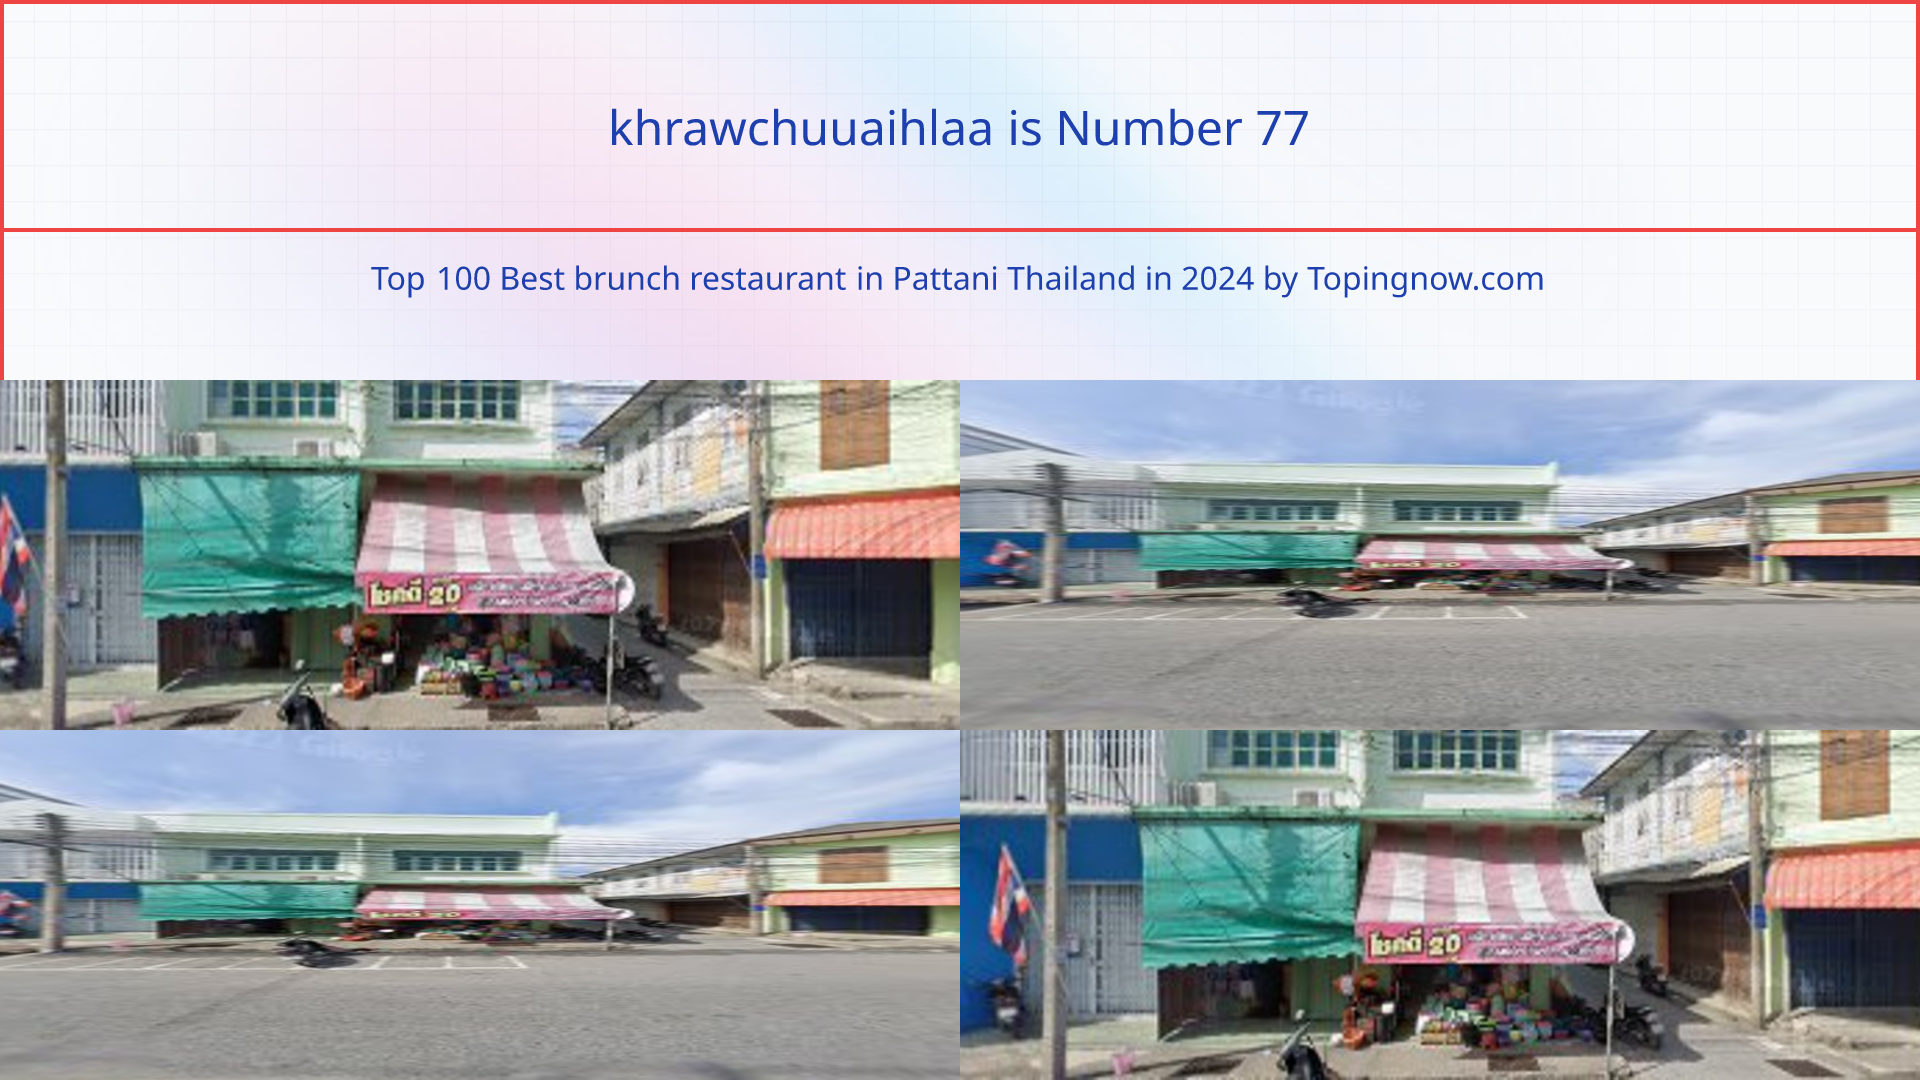 khrawchuuaihlaa: Top 100 Best brunch restaurant in Pattani Thailand in 2024